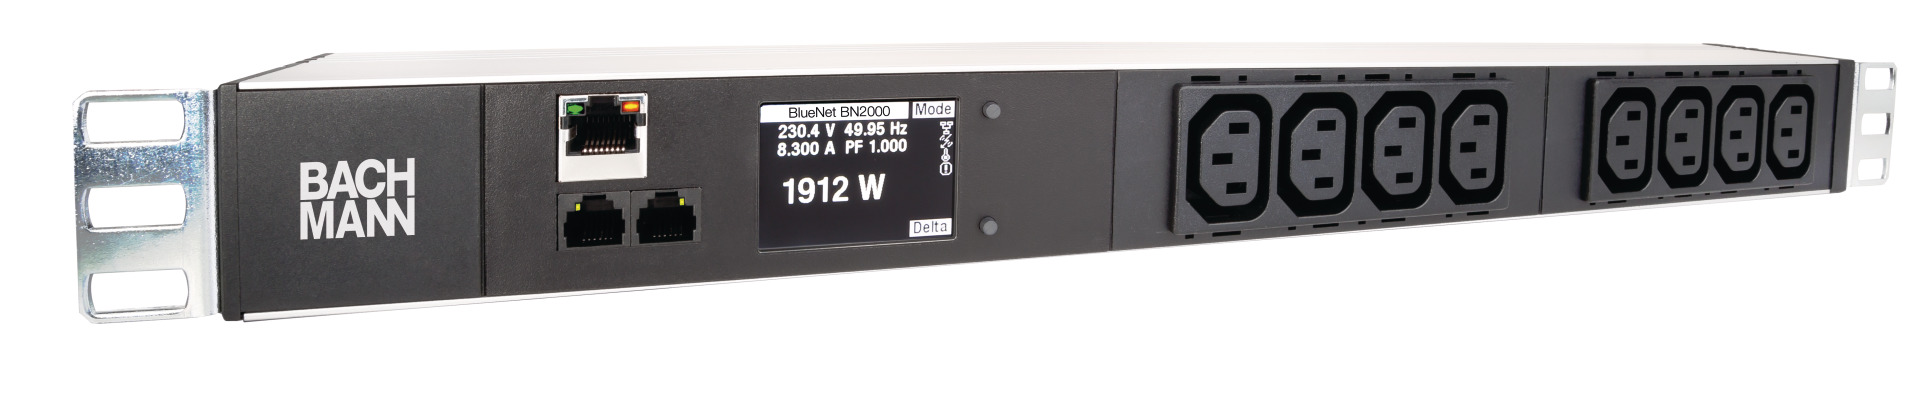 19" 1U PDU BN2000 Monitored 8 x C13